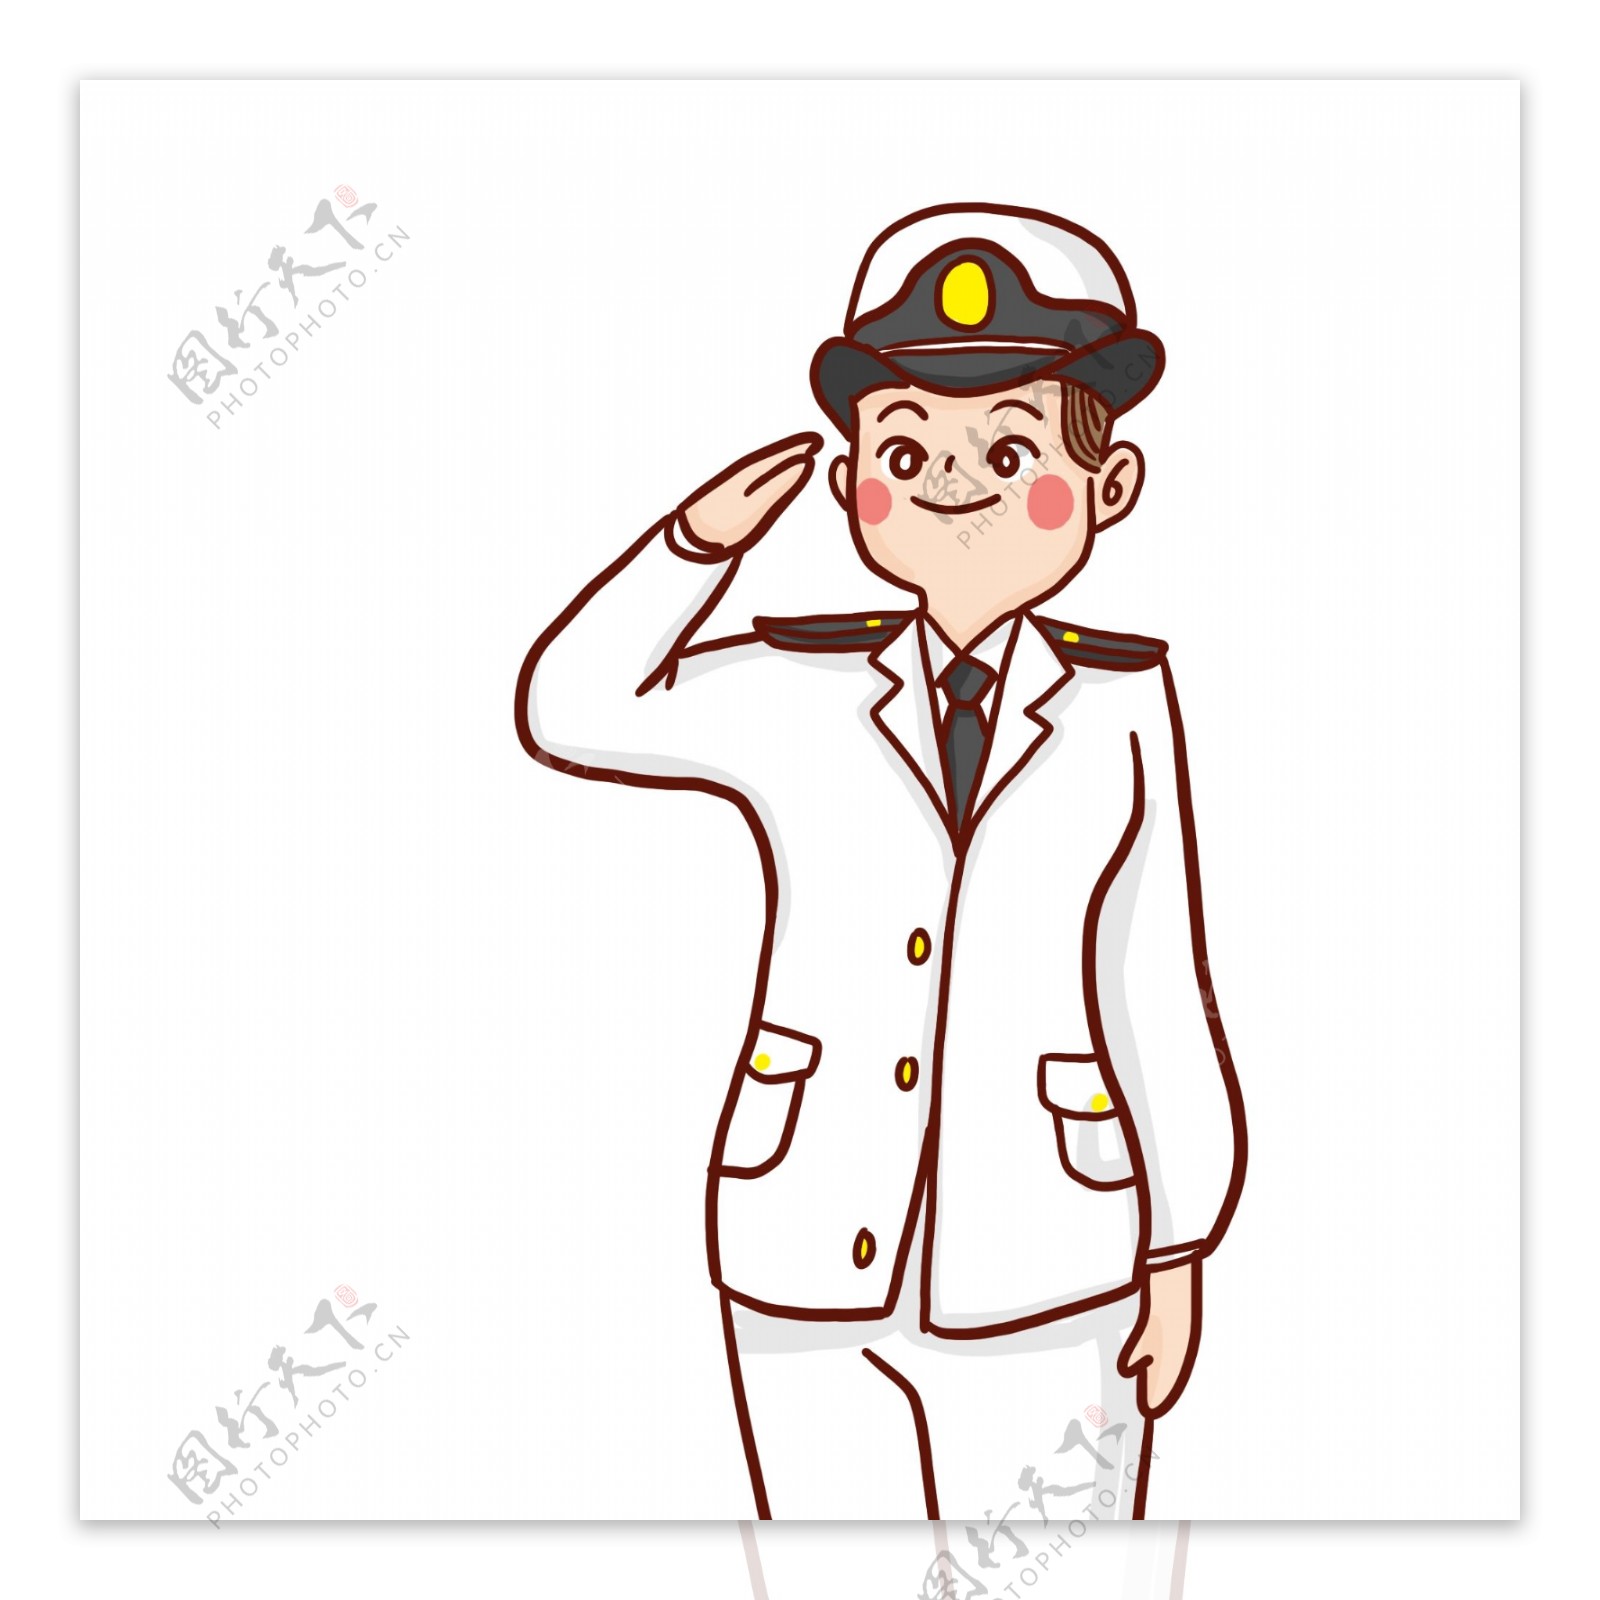 卡通手绘敬礼的海军人物插画